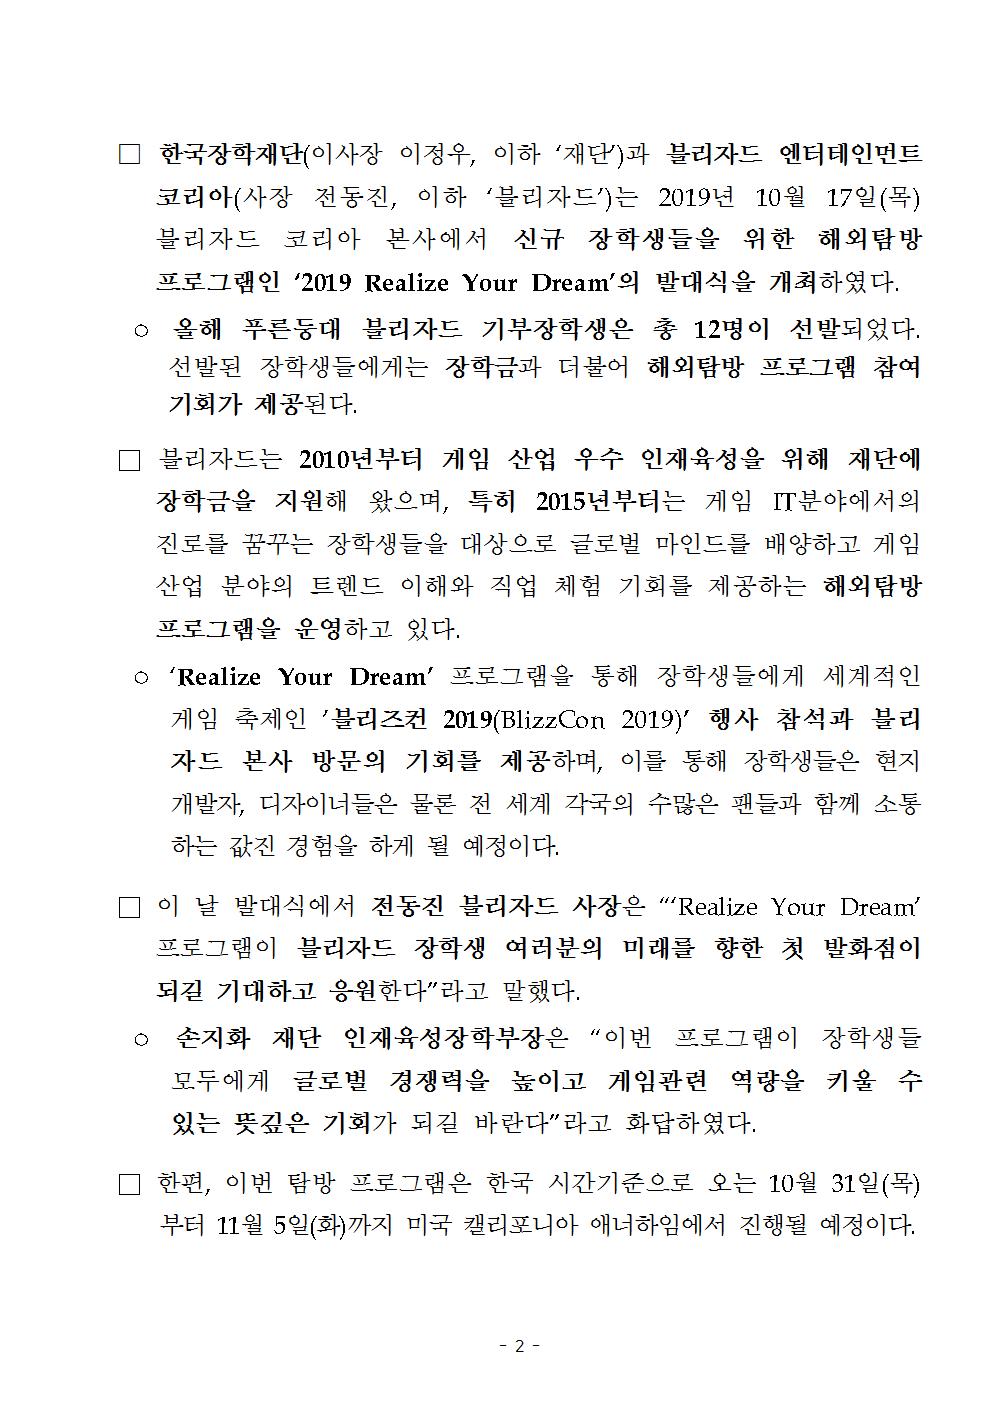 10-21(월)[보도자료] 한국장학재단, 블리자드 엔터테인먼트와 해외탐방 프로그램 발대식 개최002.jpg